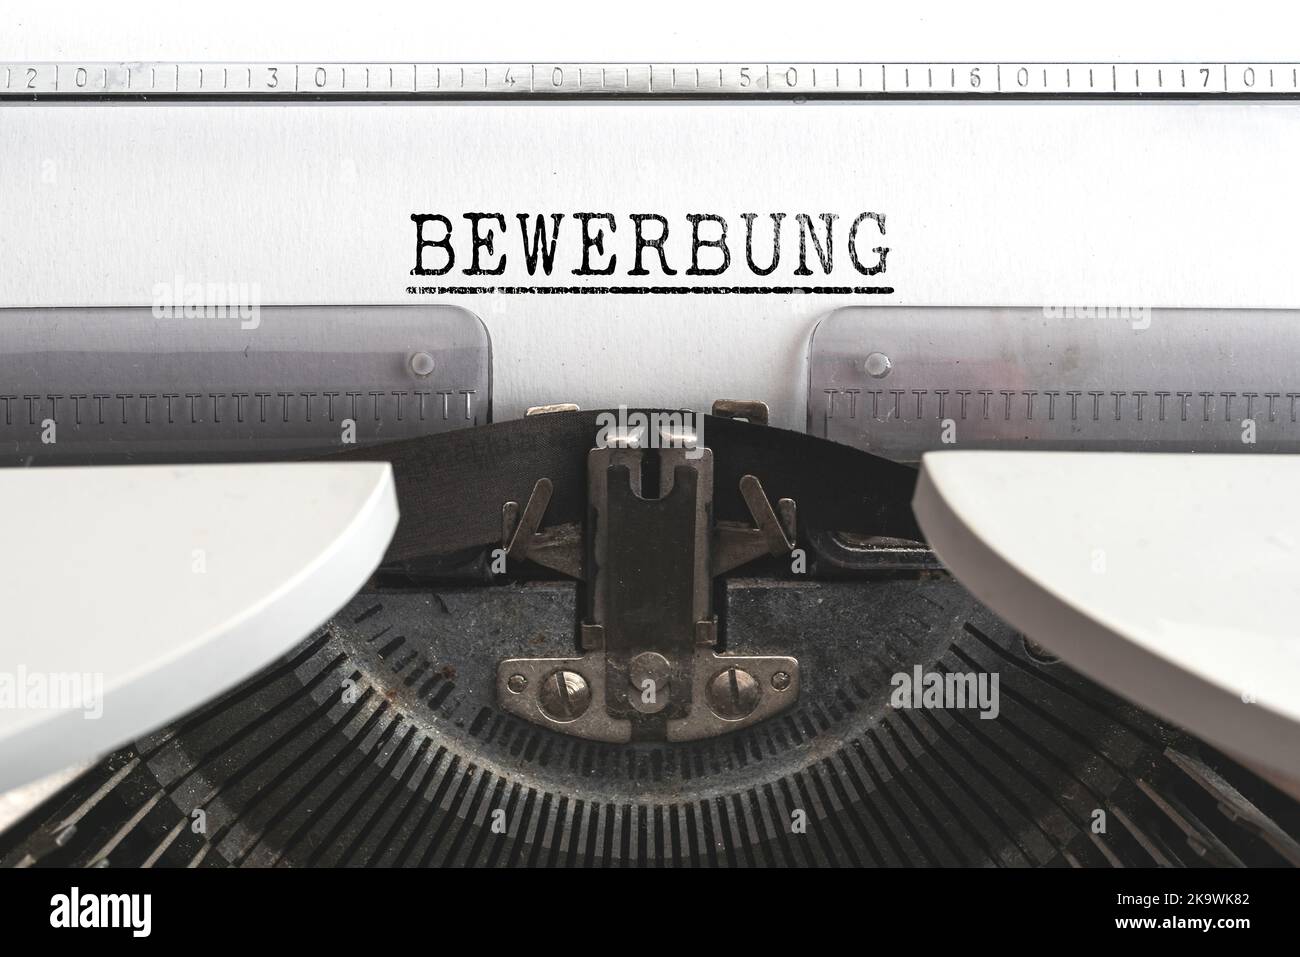 Nahaufnahme des Wortes BEWERBUNG, deutsch für Bewerbung, geschrieben auf alter mechanischer Schreibmaschine Stockfoto